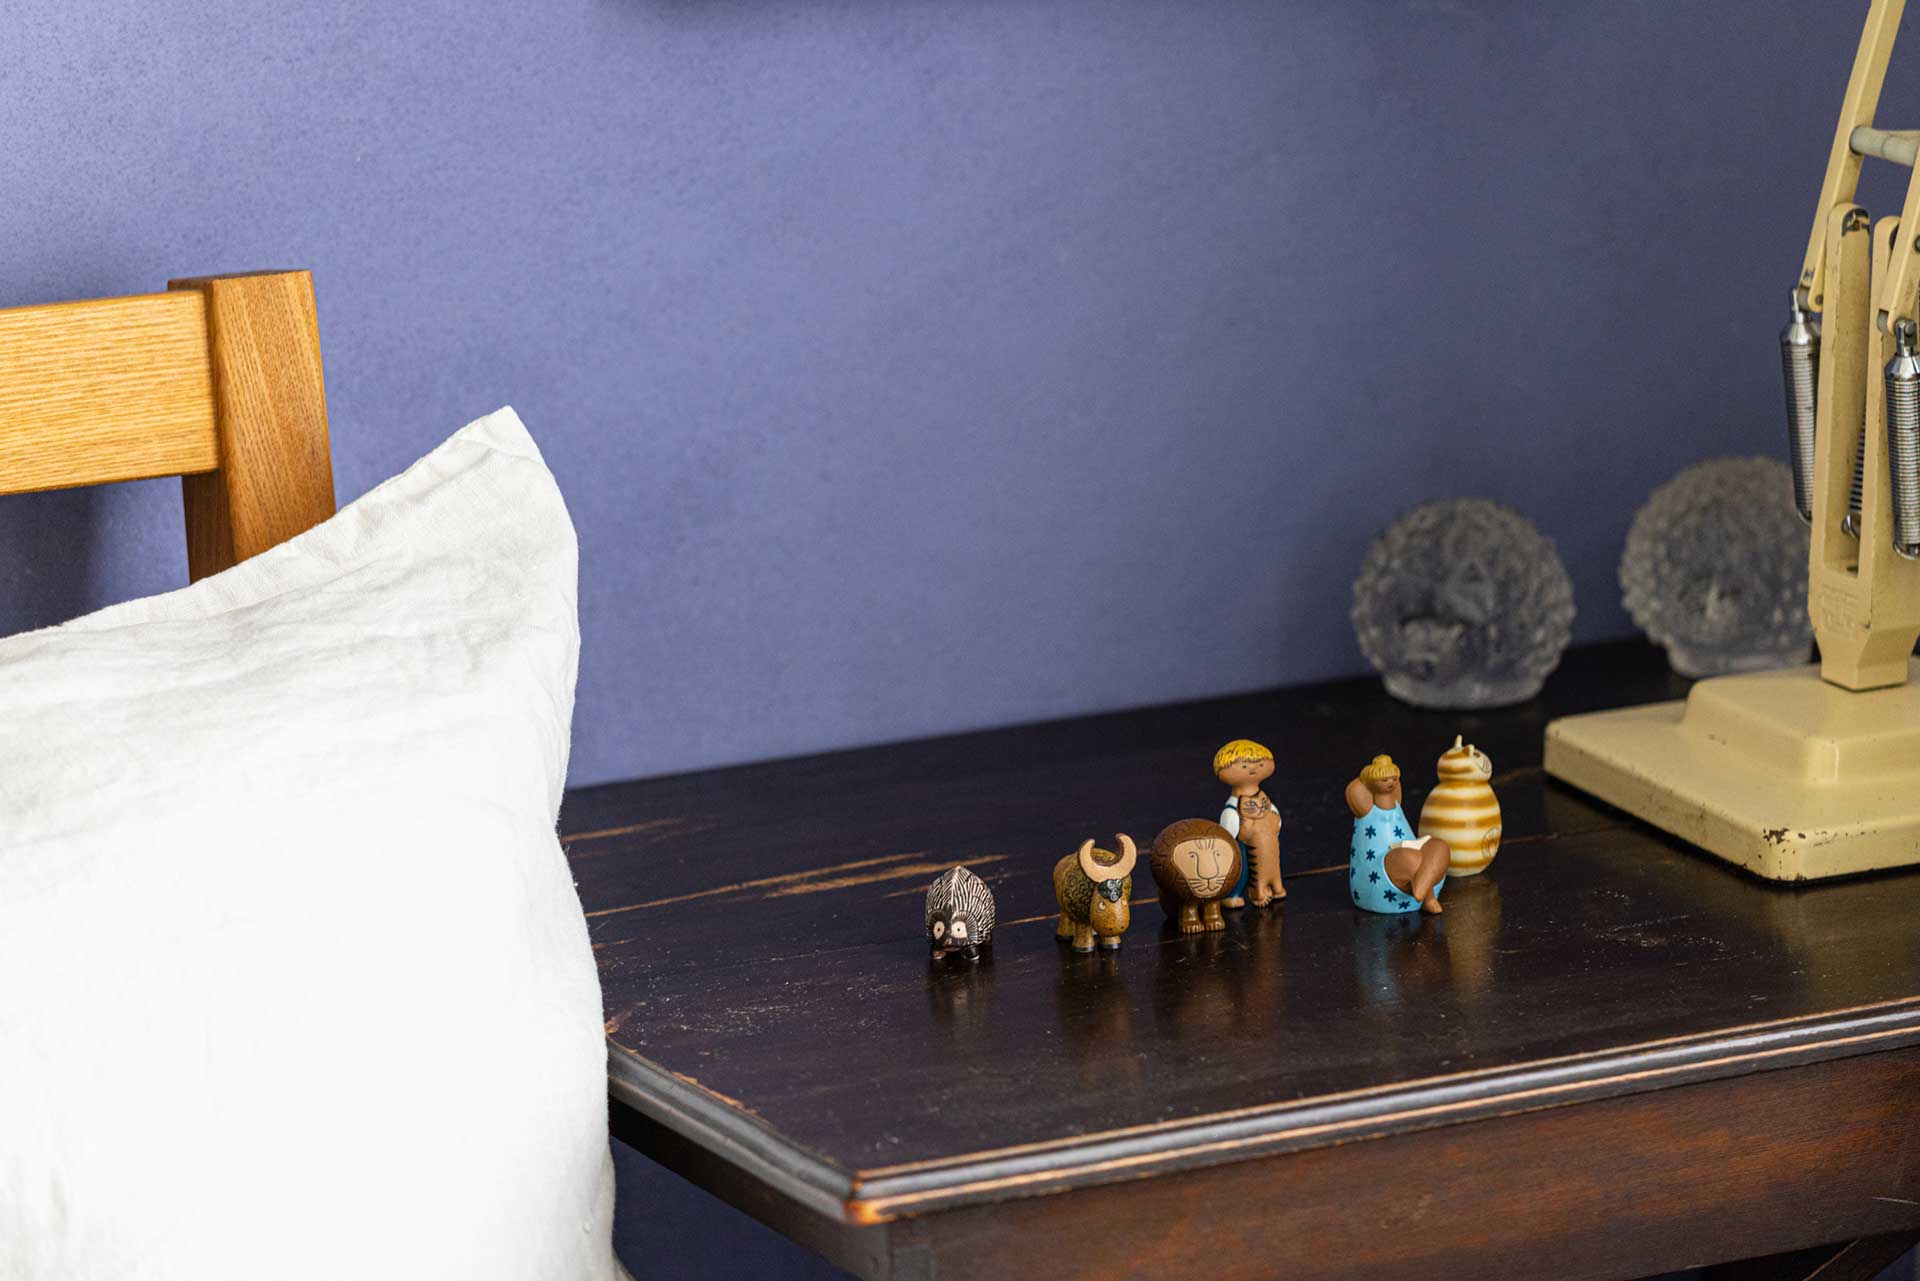 スウェーデンを代表する陶芸作家リサ・ラーソンの代表作をミニチュアサイズでフィギュア化。ベッドサイドにちょこんと並べるのにちょうどいい愛らしいサイズが魅力。